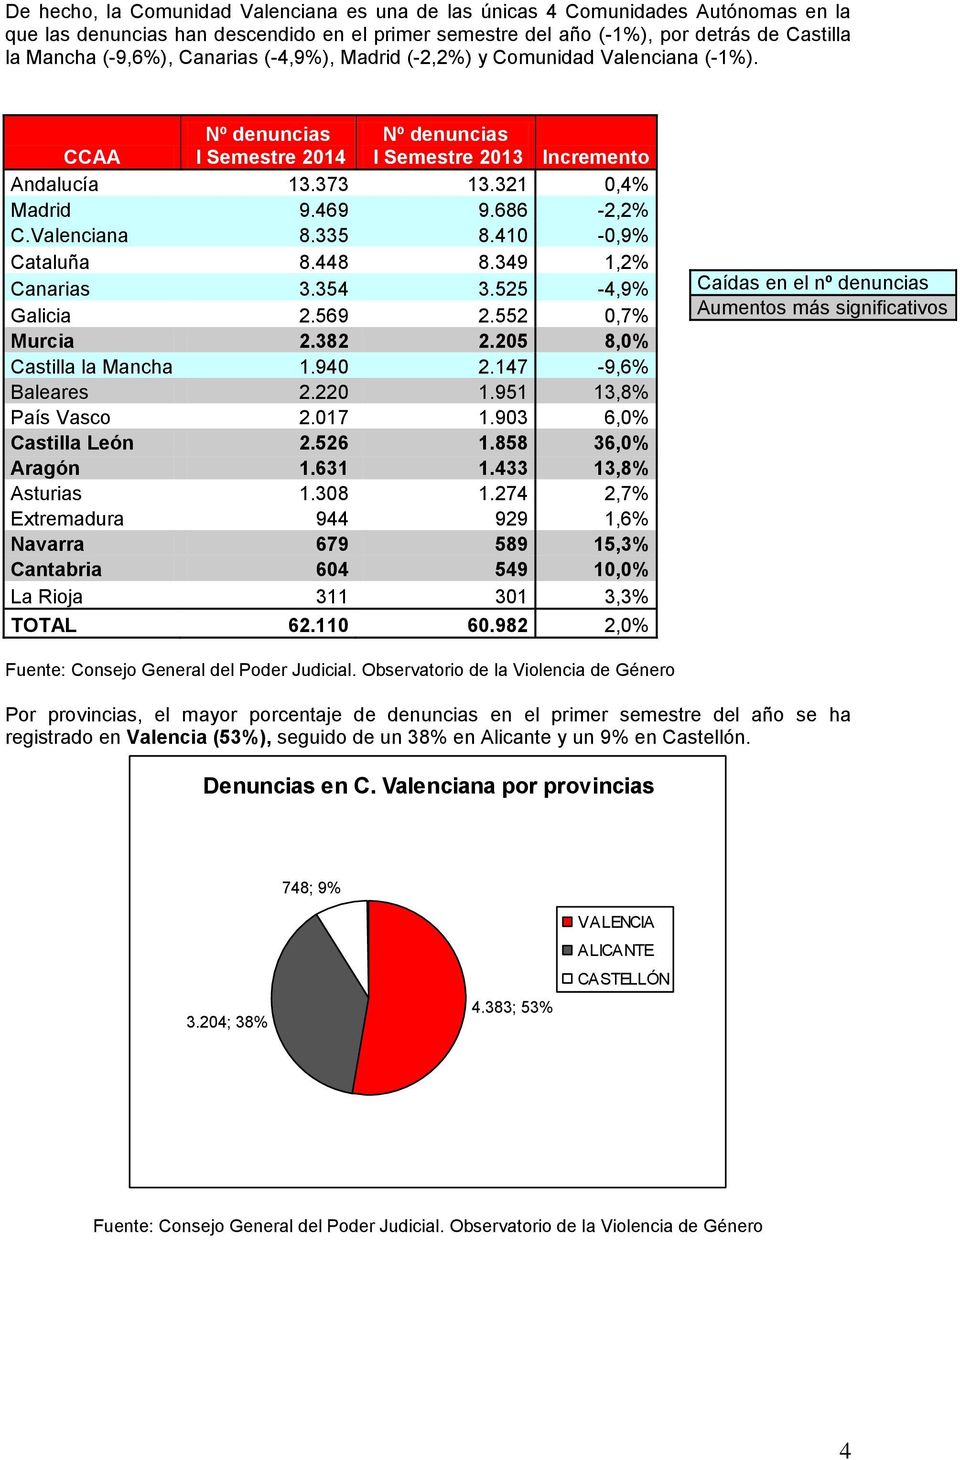 Valenciana 8.335 8.410-0,9% Cataluña 8.448 8.349 1,2% Canarias 3.354 3.525-4,9% Galicia 2.569 2.552 0,7% Murcia 2.382 2.205 8,0% Castilla la Mancha 1.940 2.147-9,6% Baleares 2.220 1.